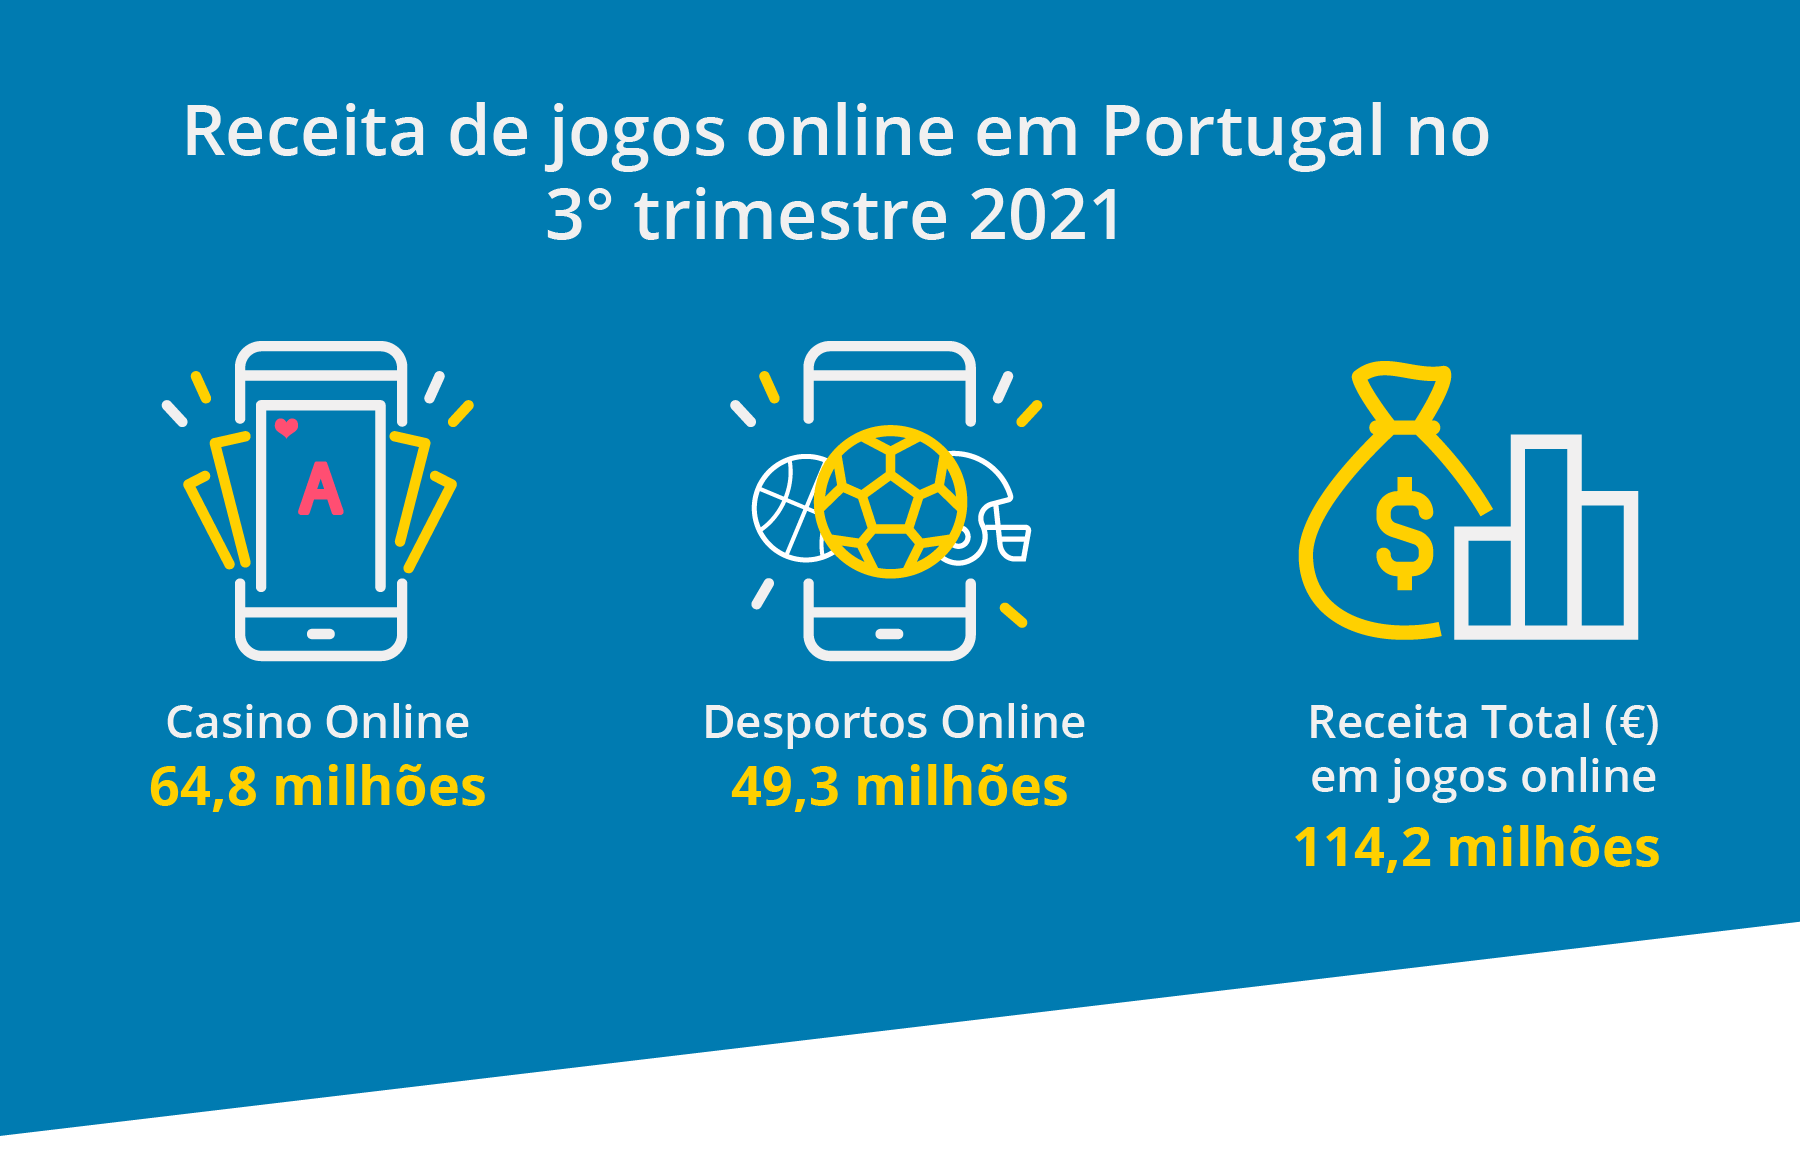 Casino online supera desportos em Portugal no 3T 2021